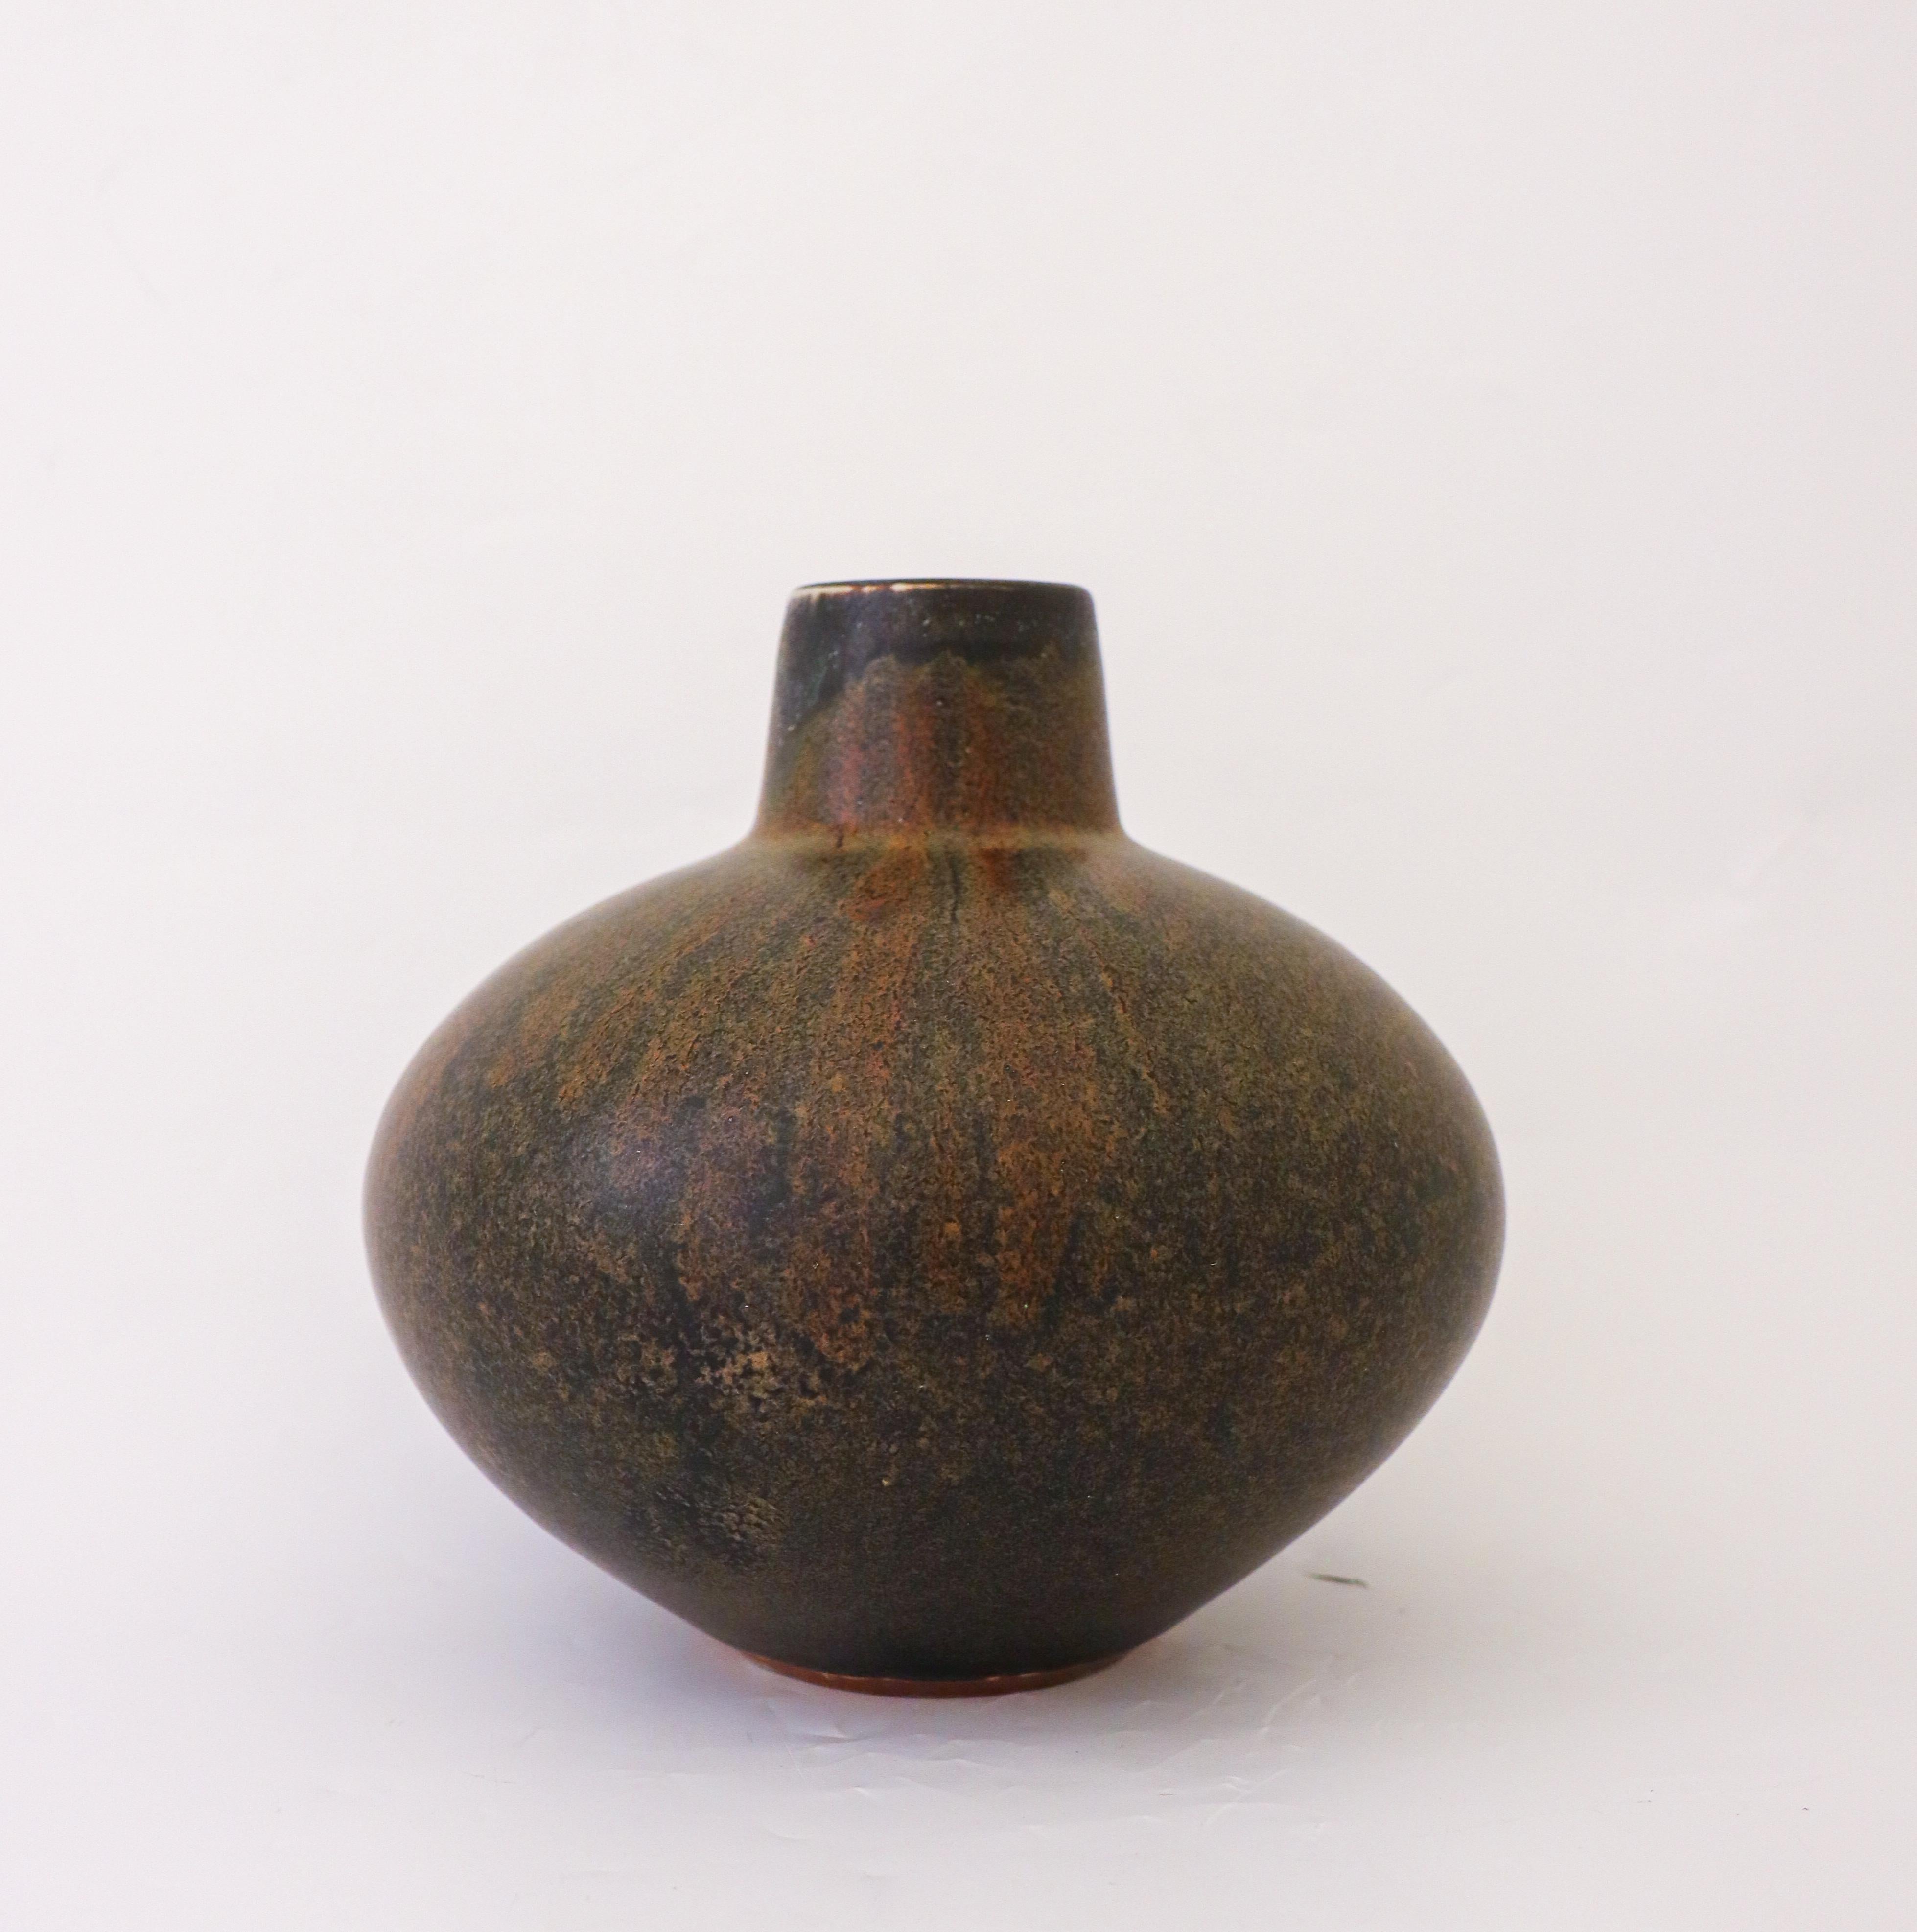 Scandinavian Modern Lovely Brown, Ceramic Vase Carl-Harry Stålhane, Rörstrand - Mid 20th Century For Sale